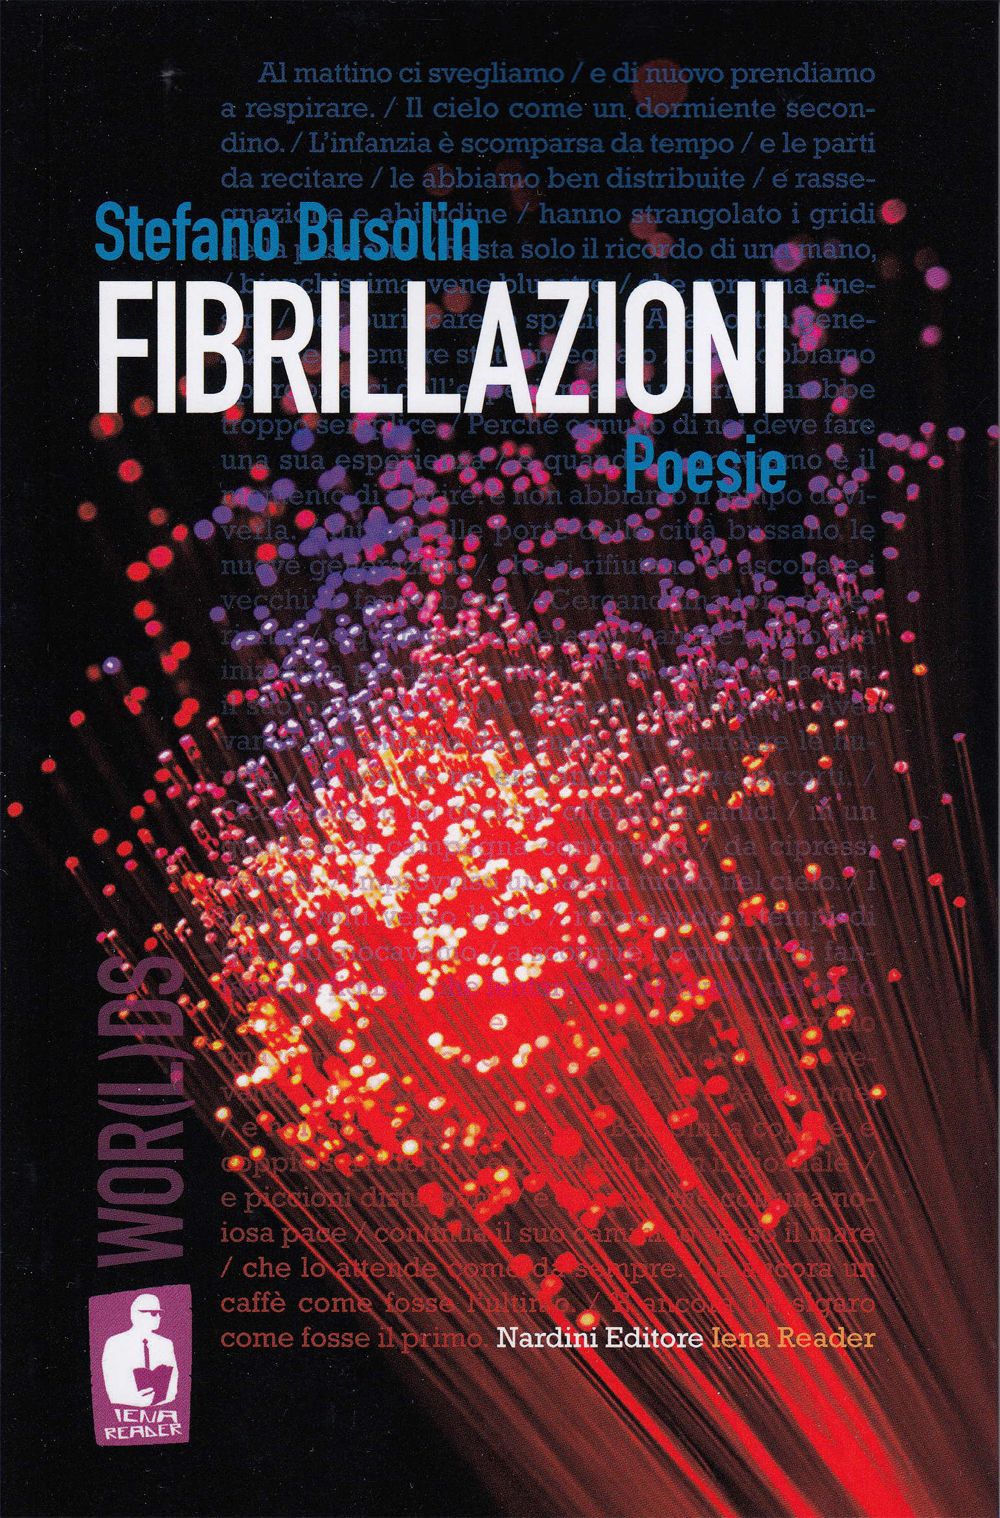 Fibrillazioni - Stefano Busolin - Nardini Editore - Iena Reader